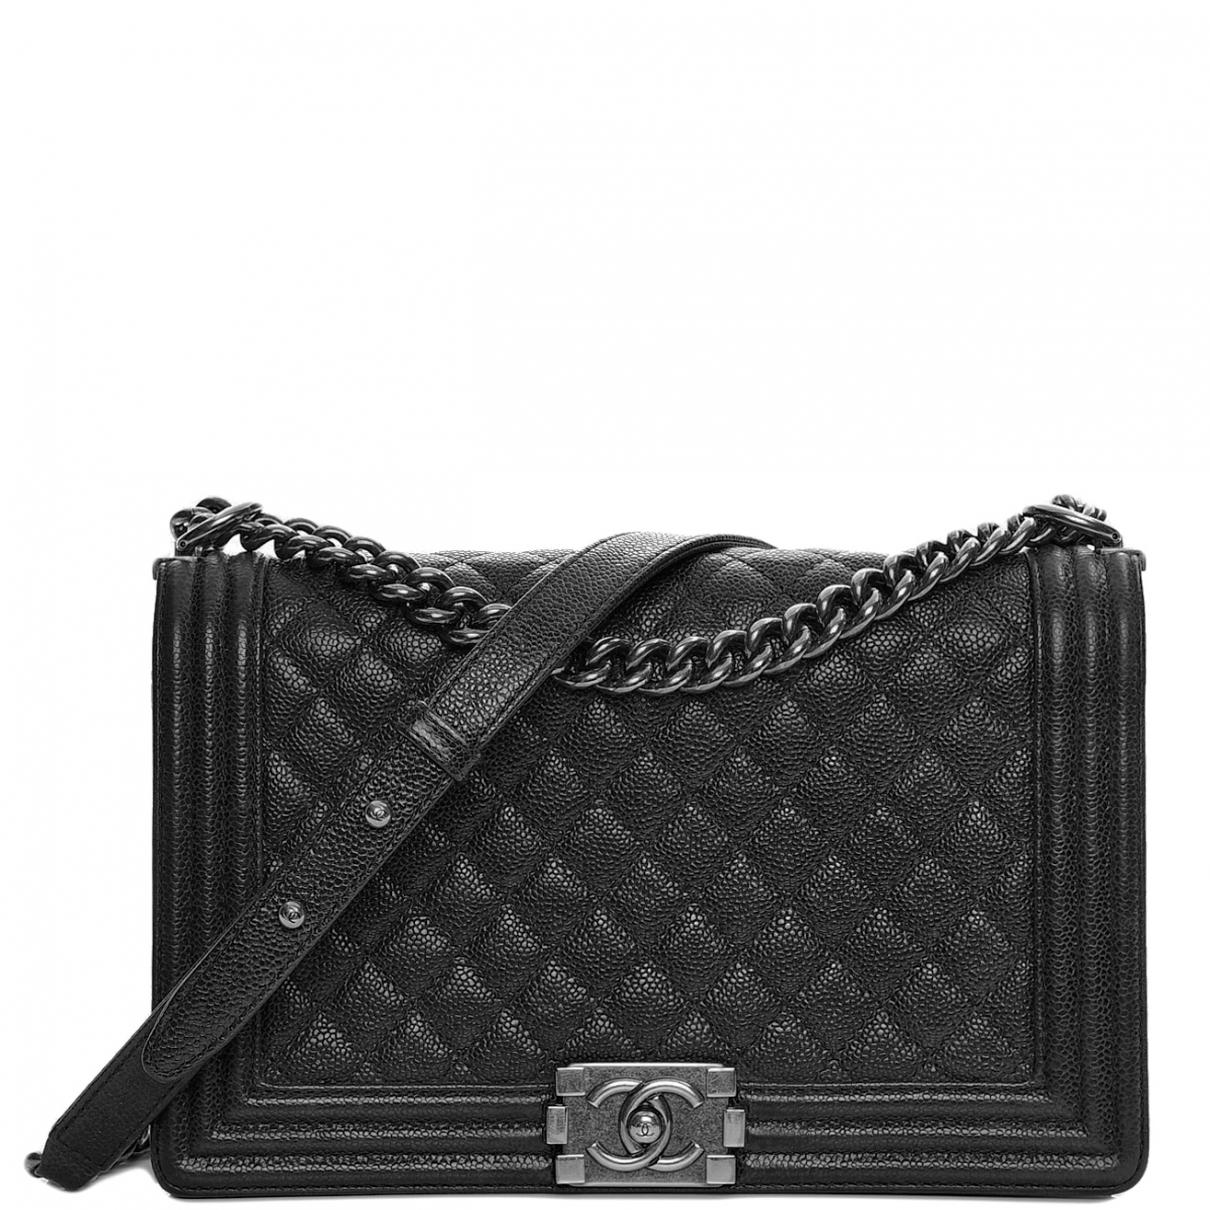 Chanel Boy Leather Crossbody Bag in Black - Lyst